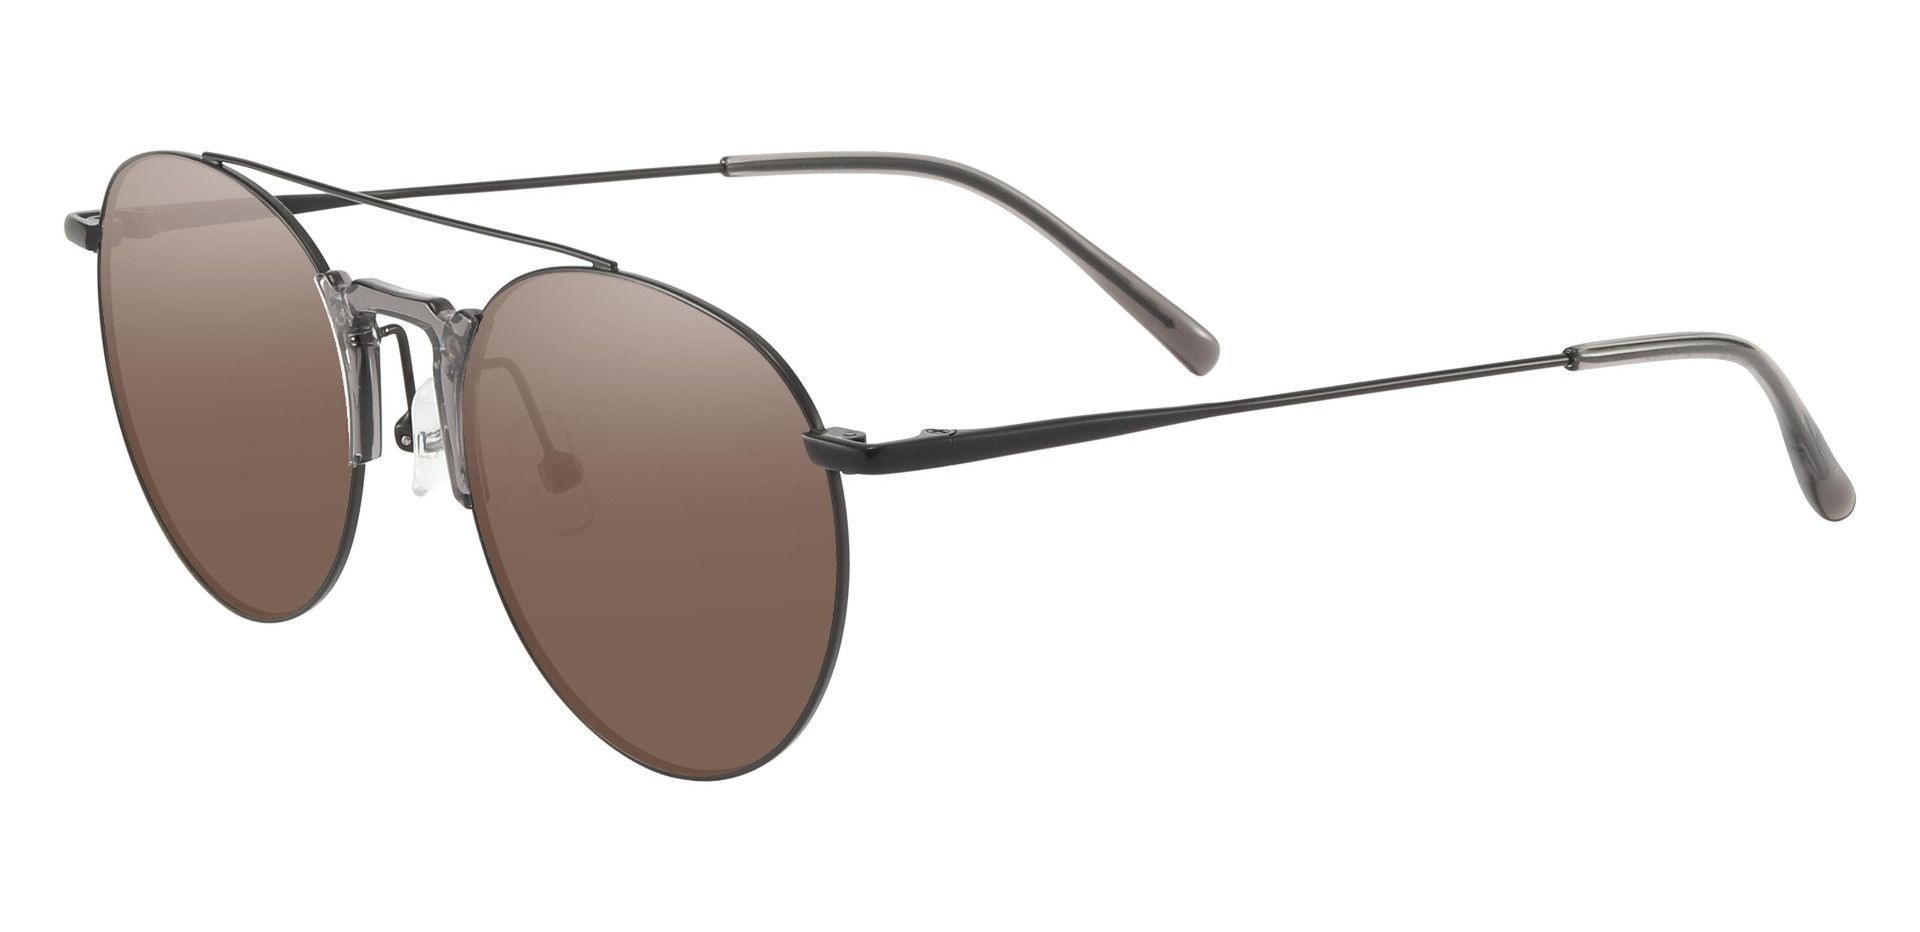 Ludden Aviator Progressive Sunglasses - Black Frame With Brown Lenses